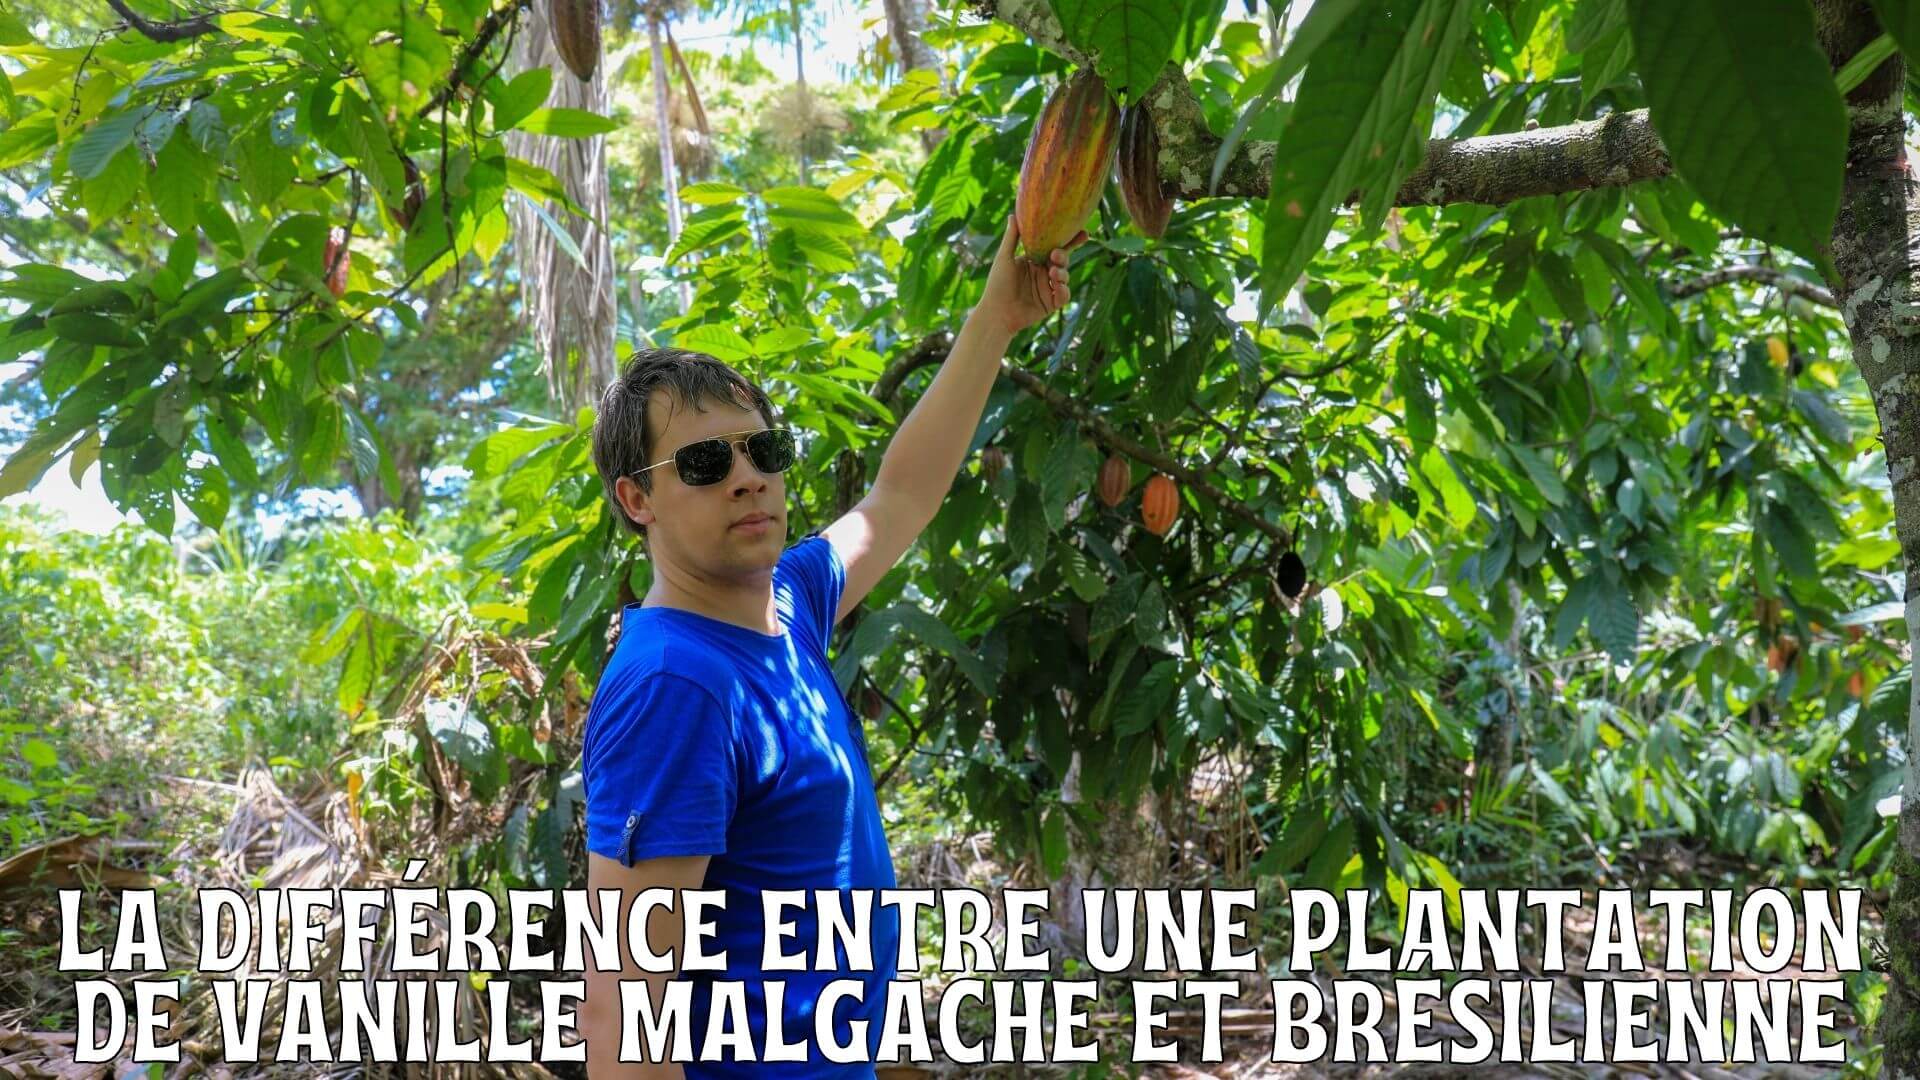 La différence entre une plantation de vanille malgache et brésilienne